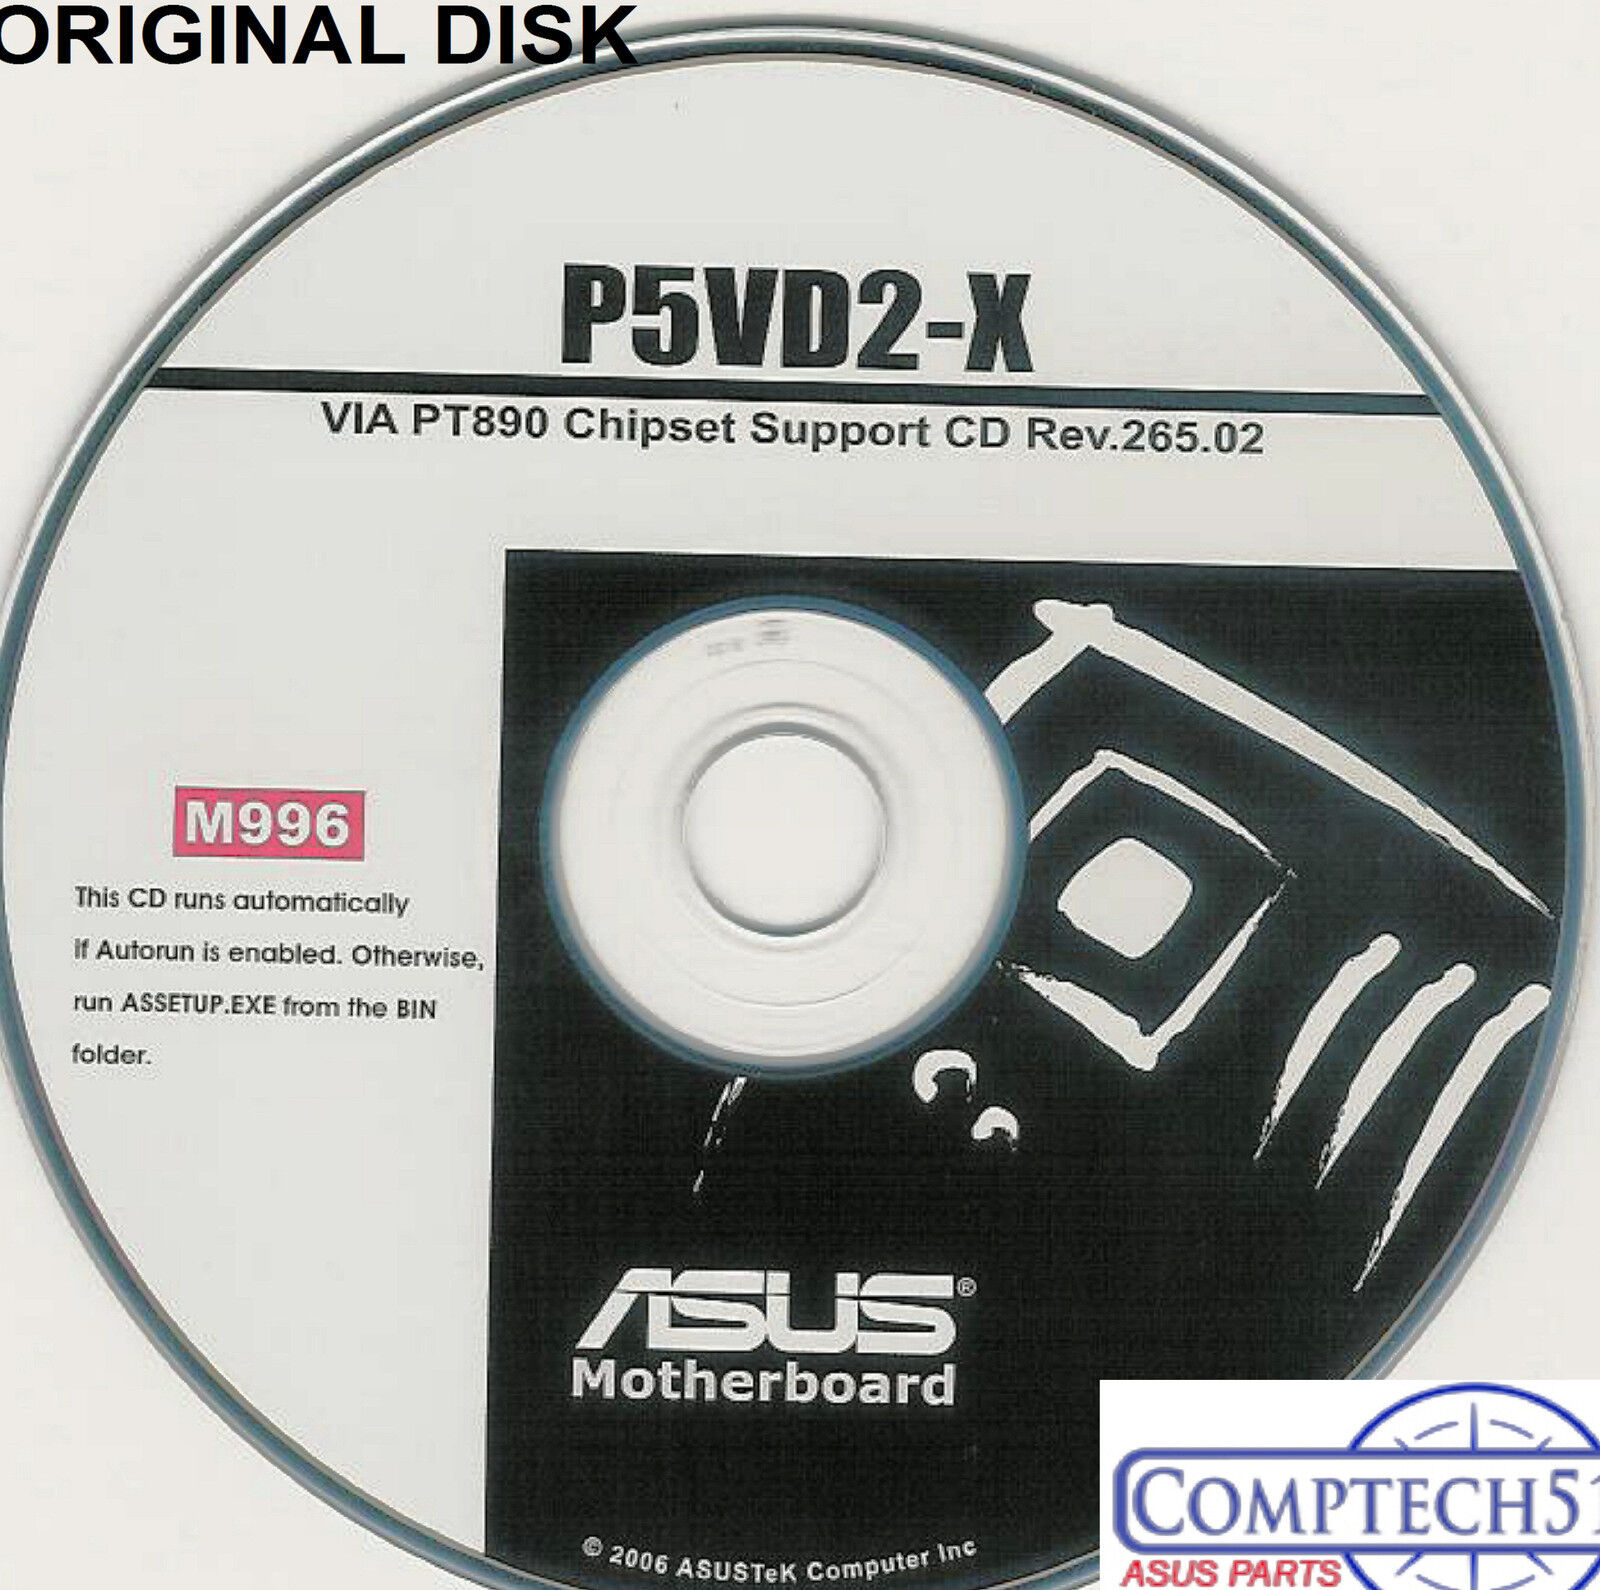 ASUS GENUINE VINTAGE ORIGINAL DISK FOR P5VD2-X Motherboard Drivers Disk M996